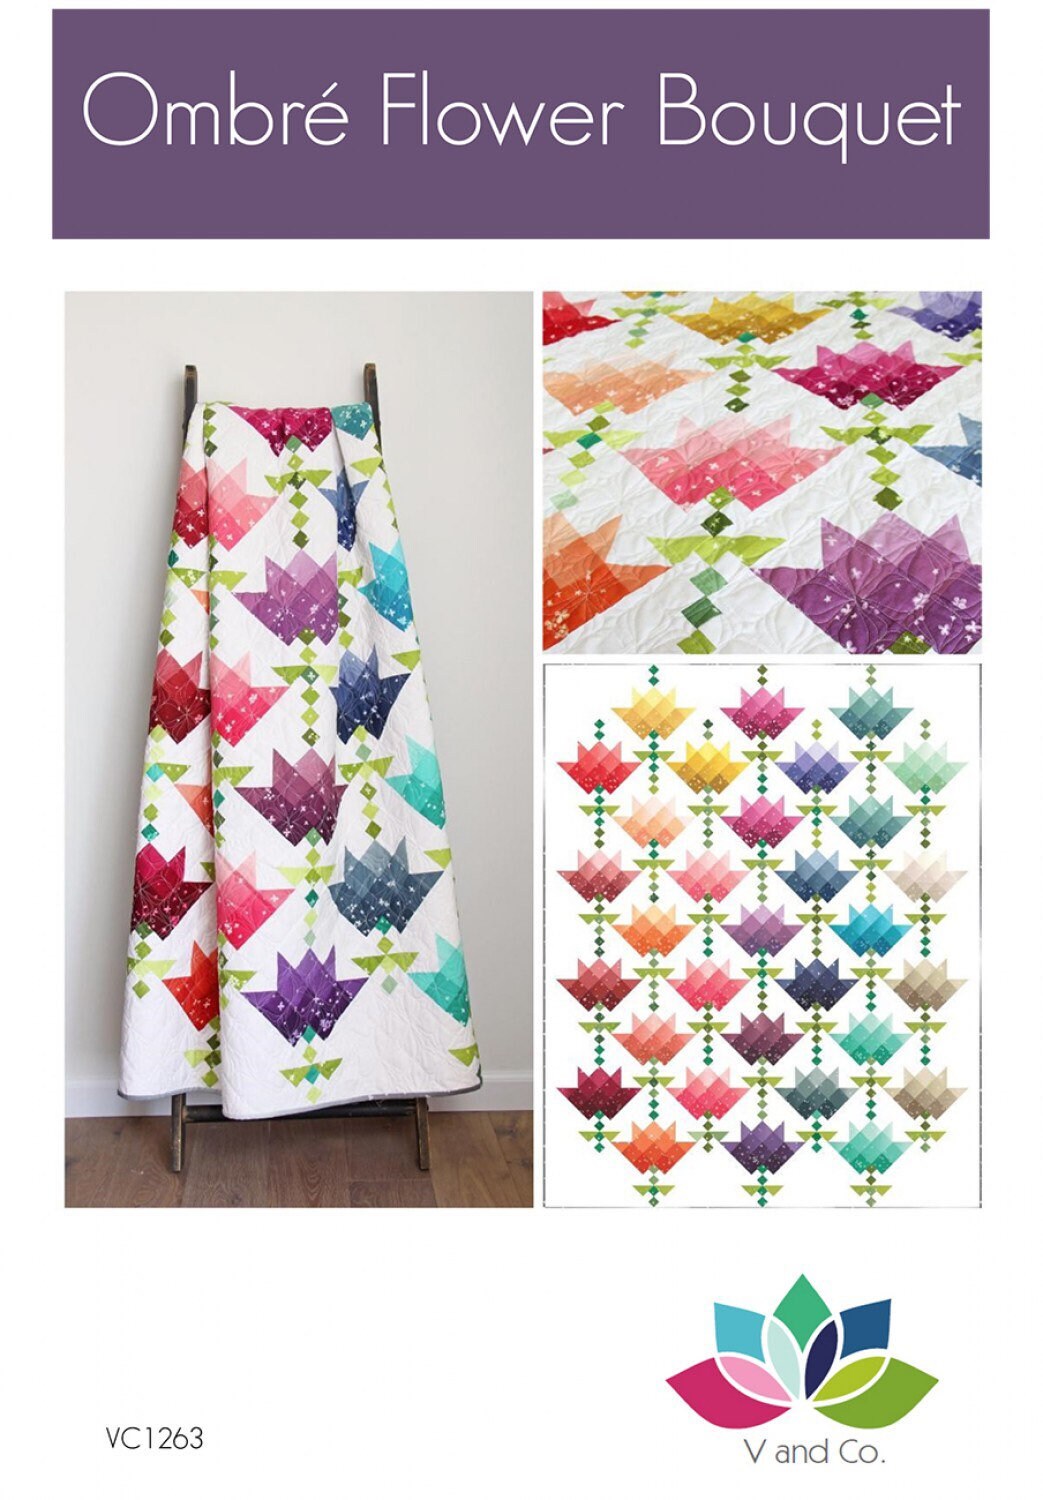 Ombré Flower Bouquet Quilt Pattern - V and Co - Vanessa Christenson - Ombré Quilt Pattern